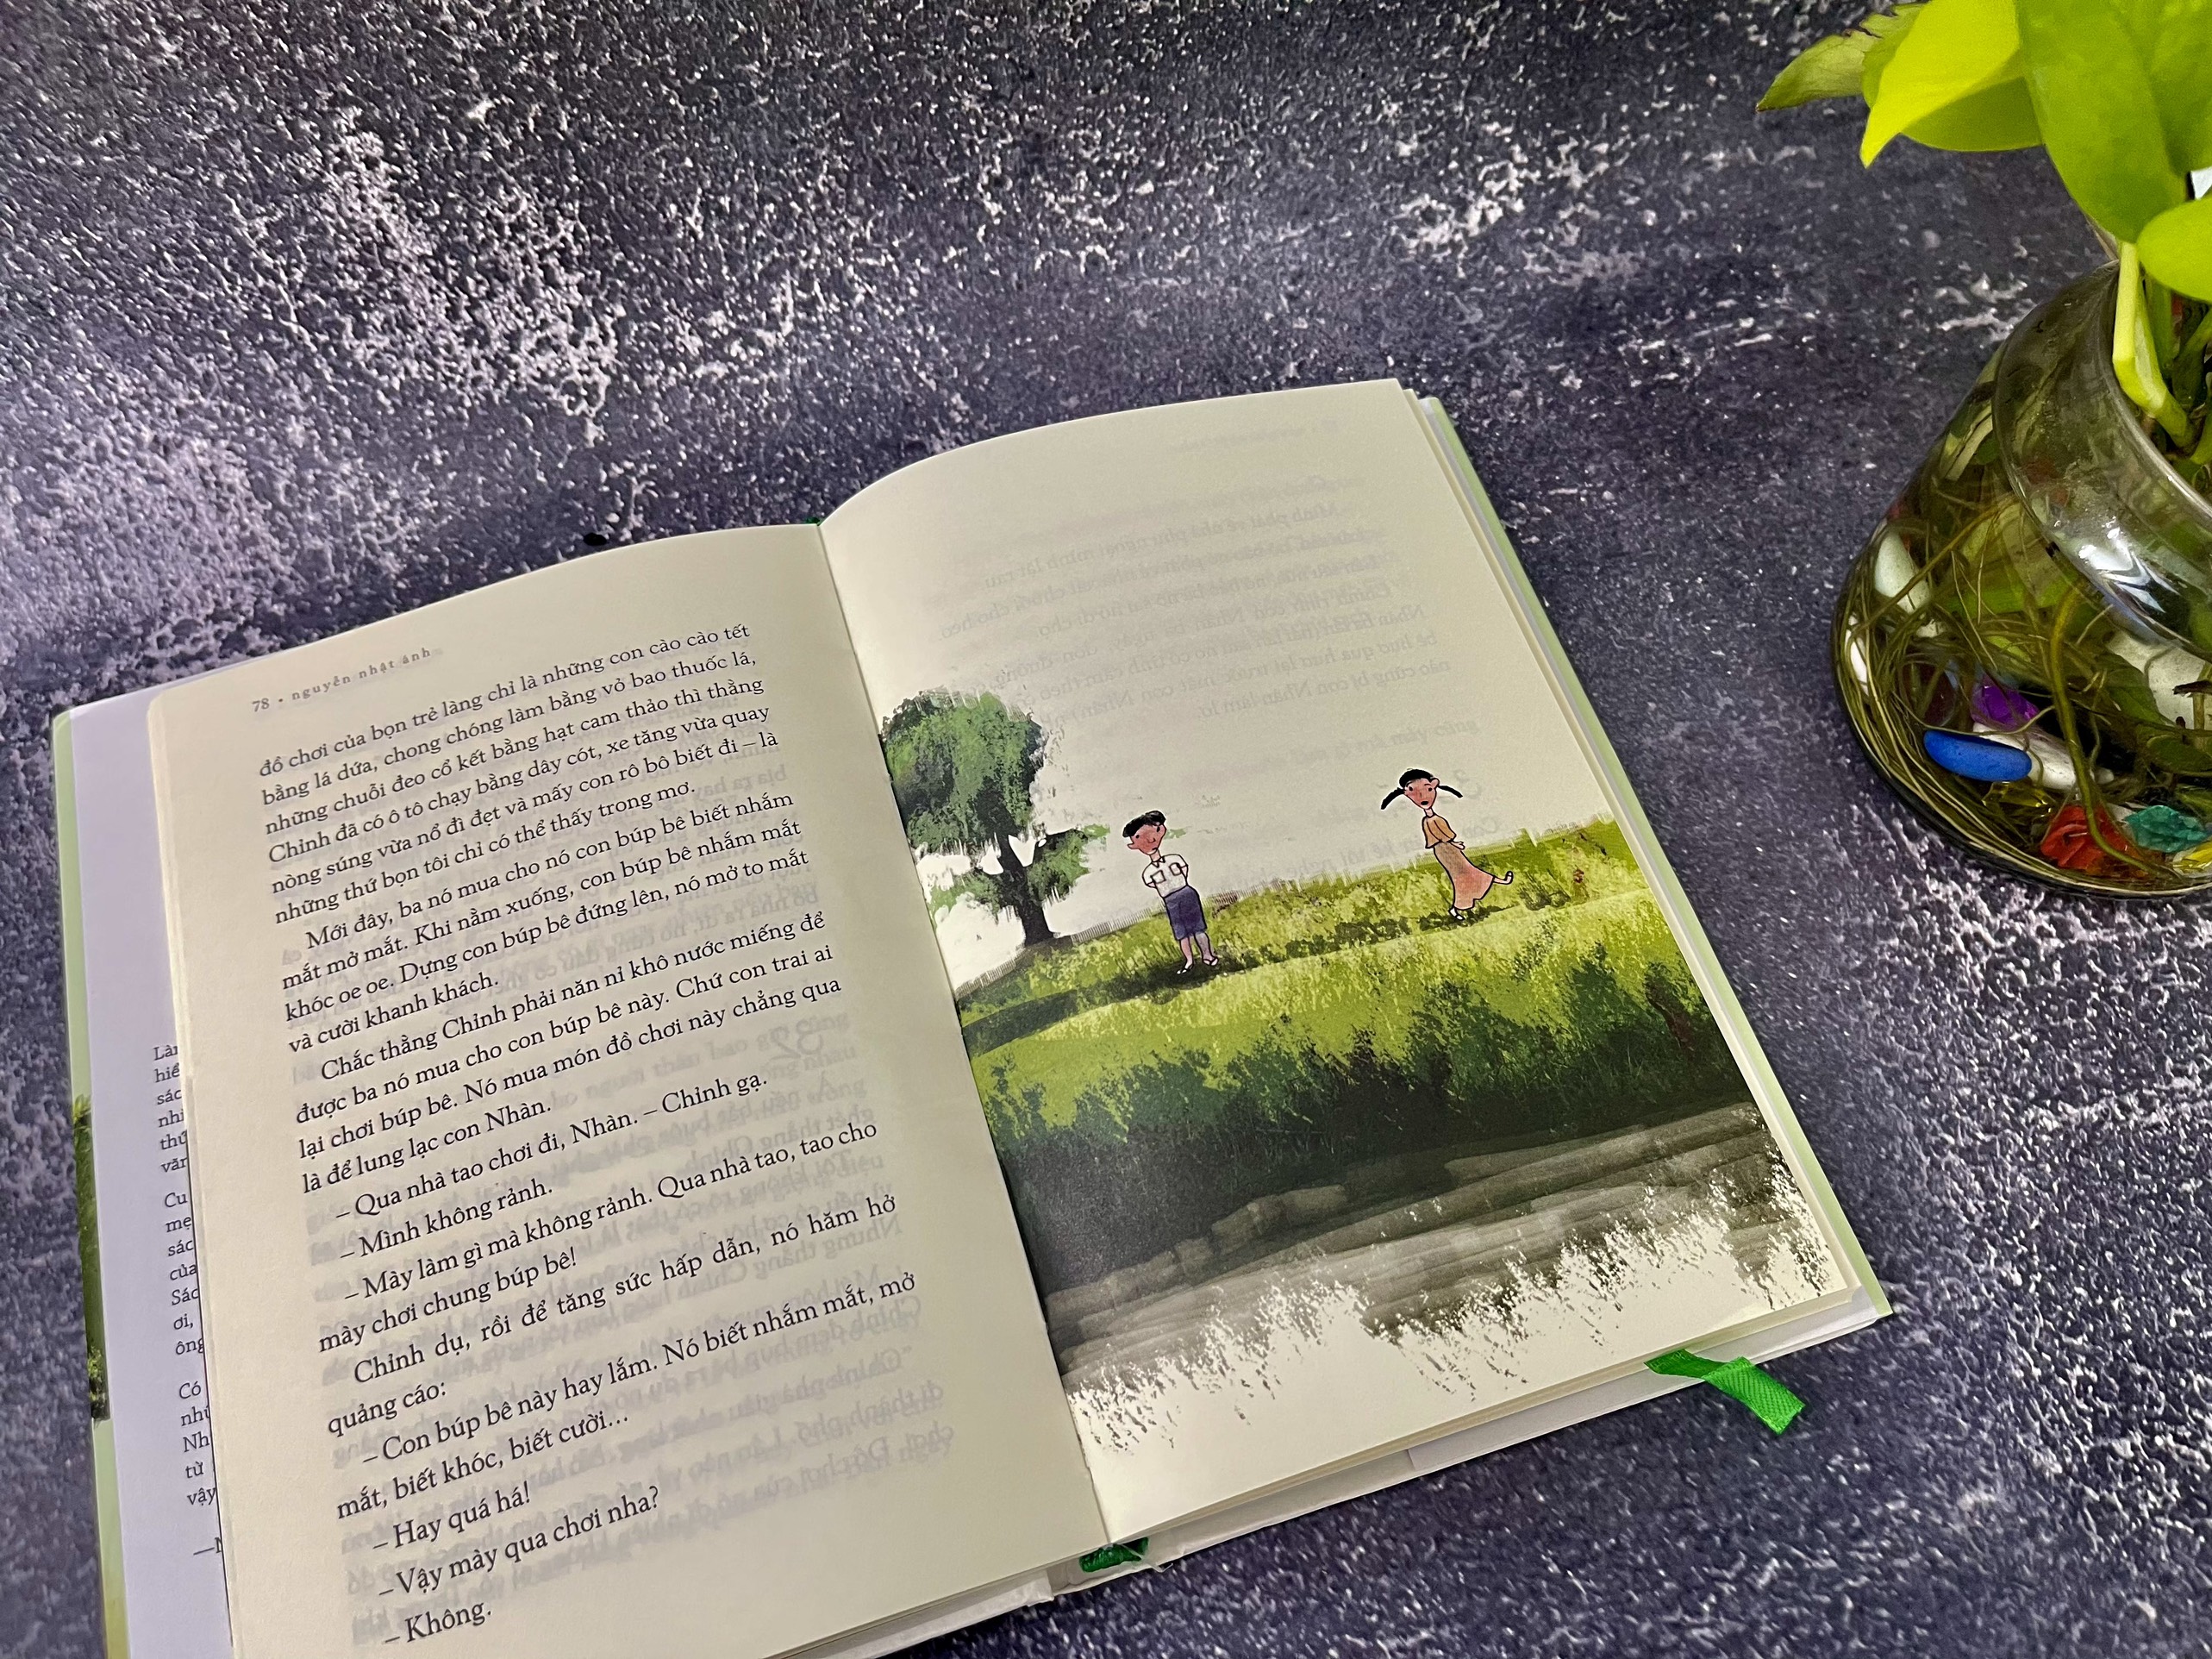 Sách mùa hè không tên - bìa cứng - Nguyễn Nhật Ánh ( tặng bookmark ) NXBT